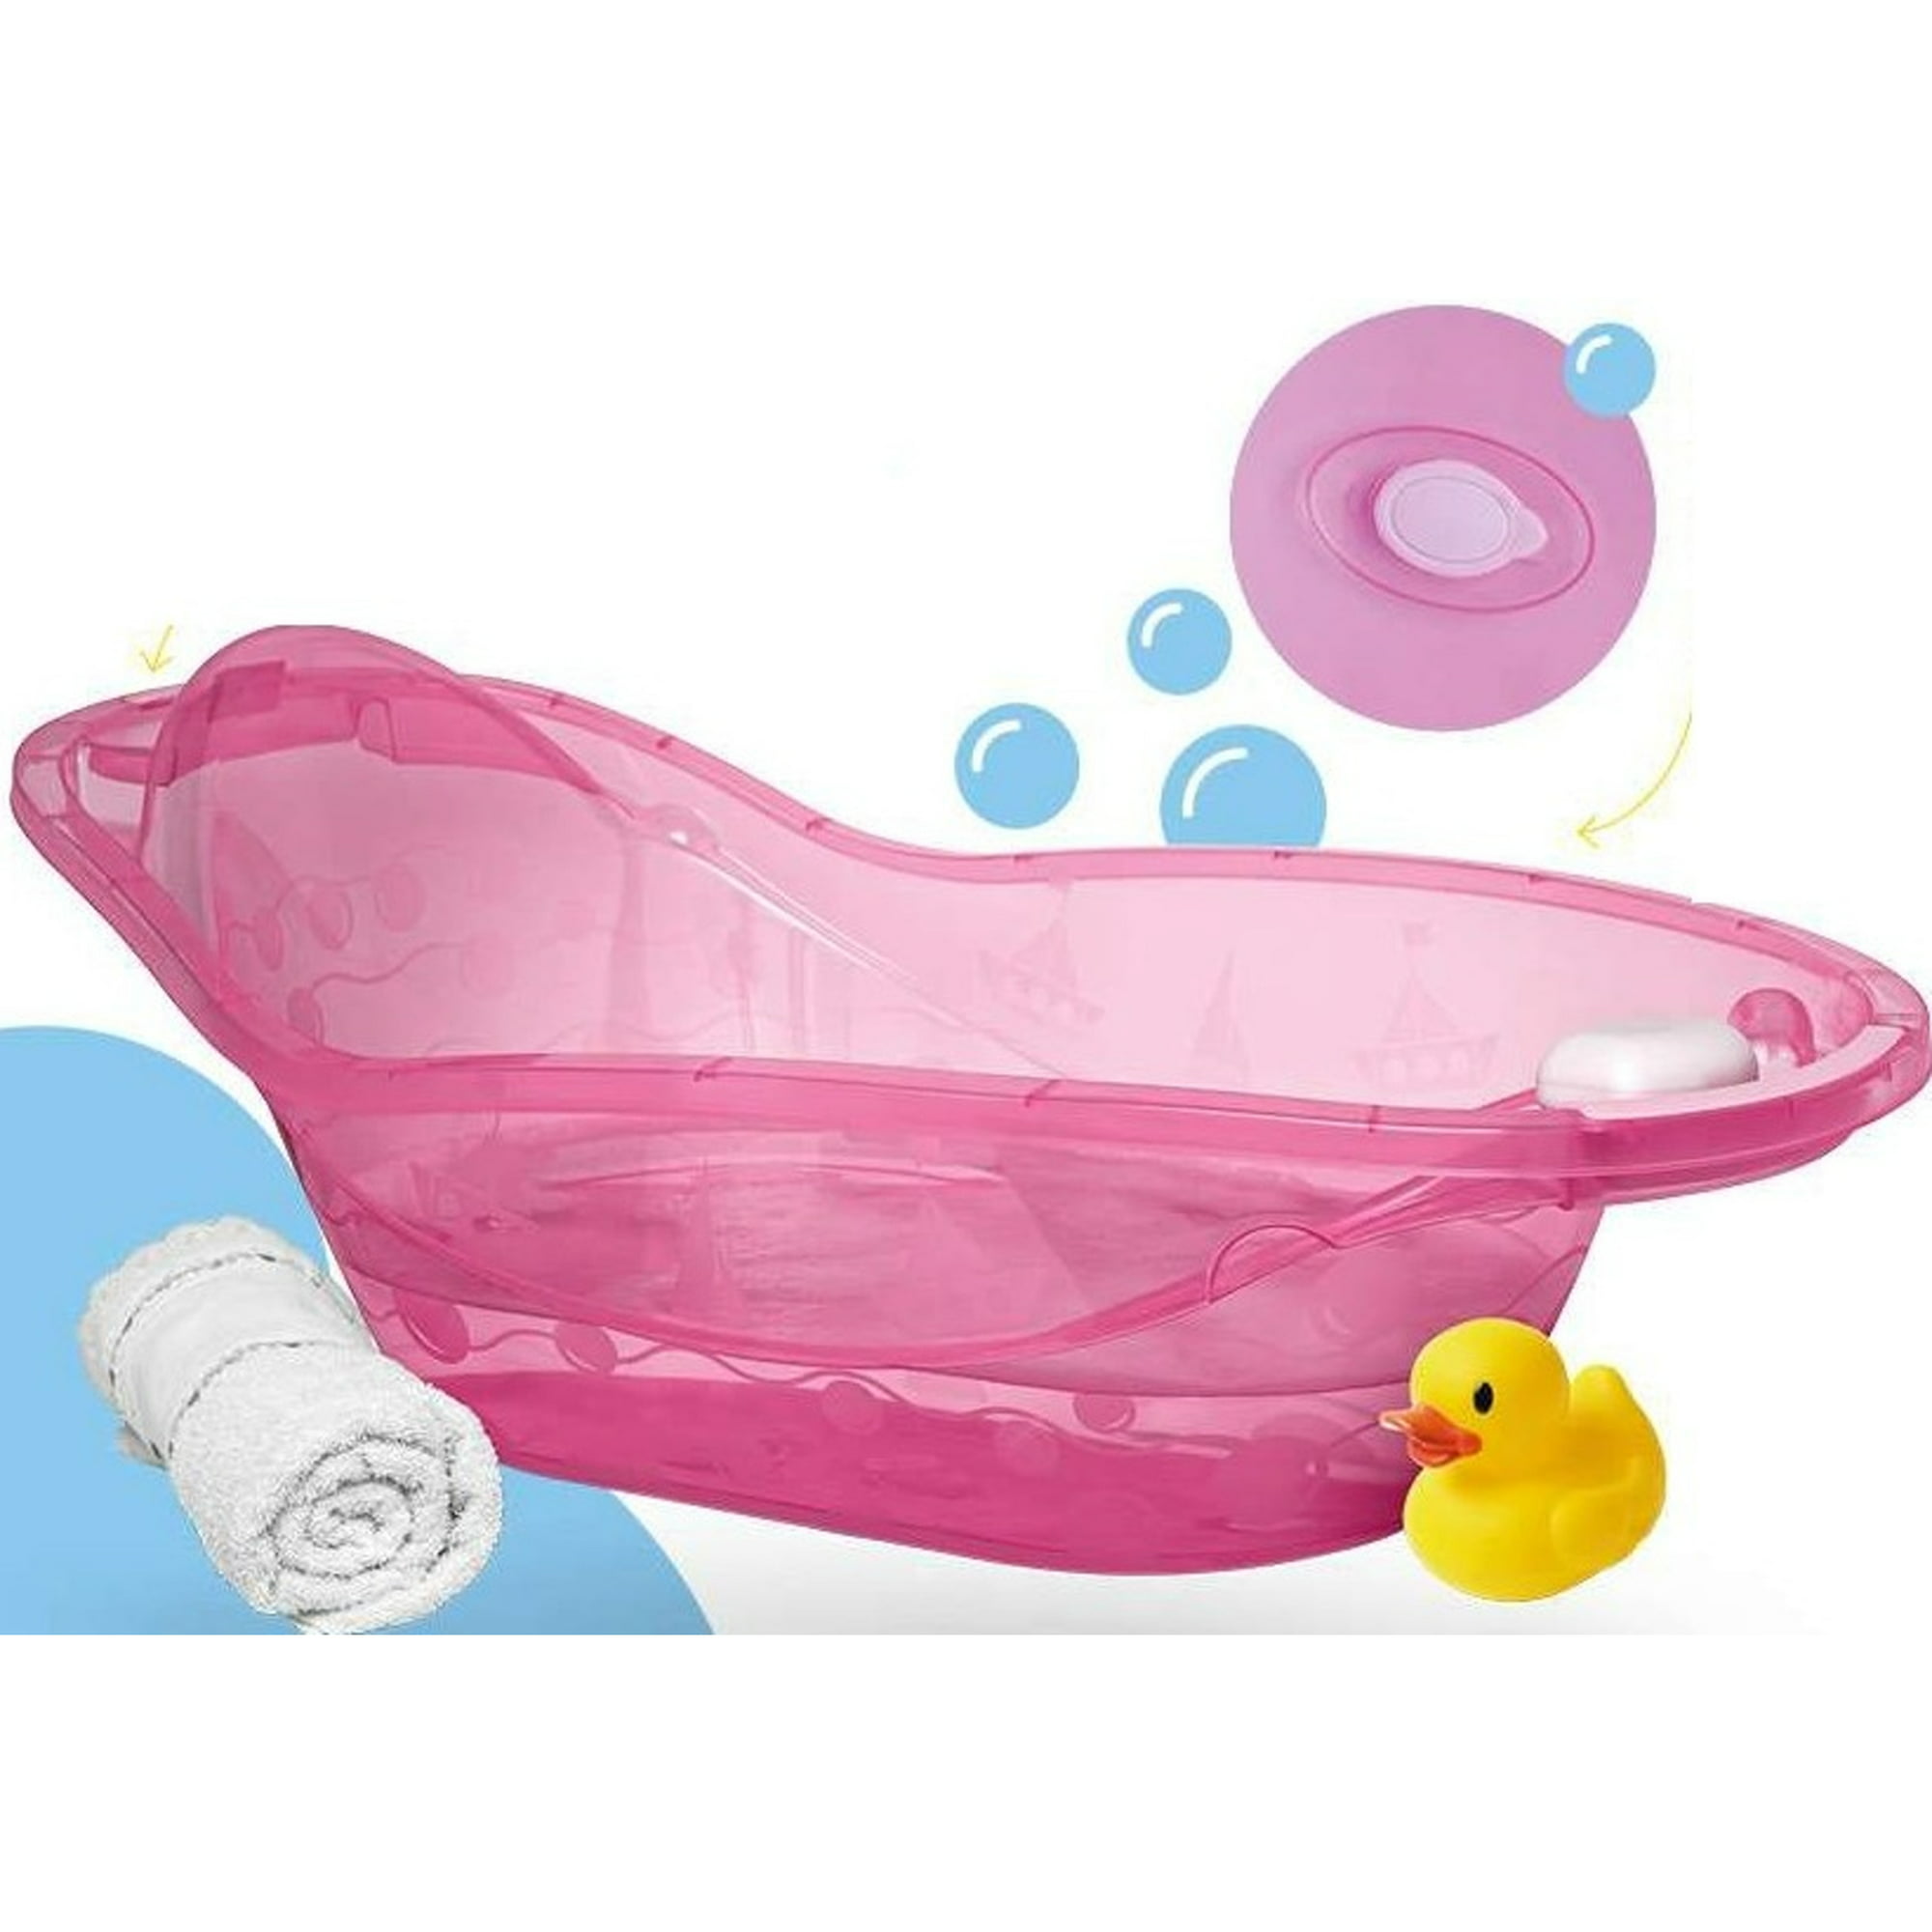 Bañera, Tina portátil para bebe de Plastico Rosa con tapón de salida de  agua en plástico libre de BPA Jaguar Plásticos Cuidado del Bebé